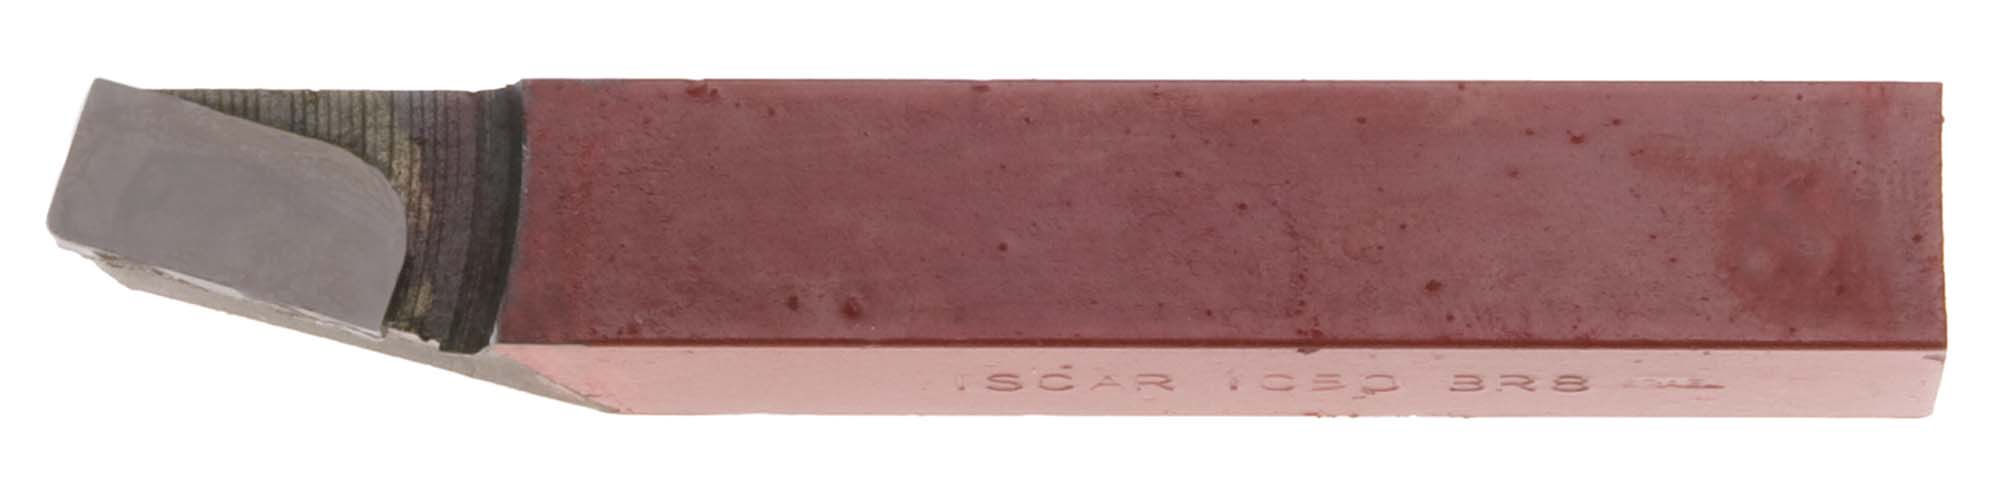 5/16" Square C Iscar Carbide Toolbit Grade IC50/C5